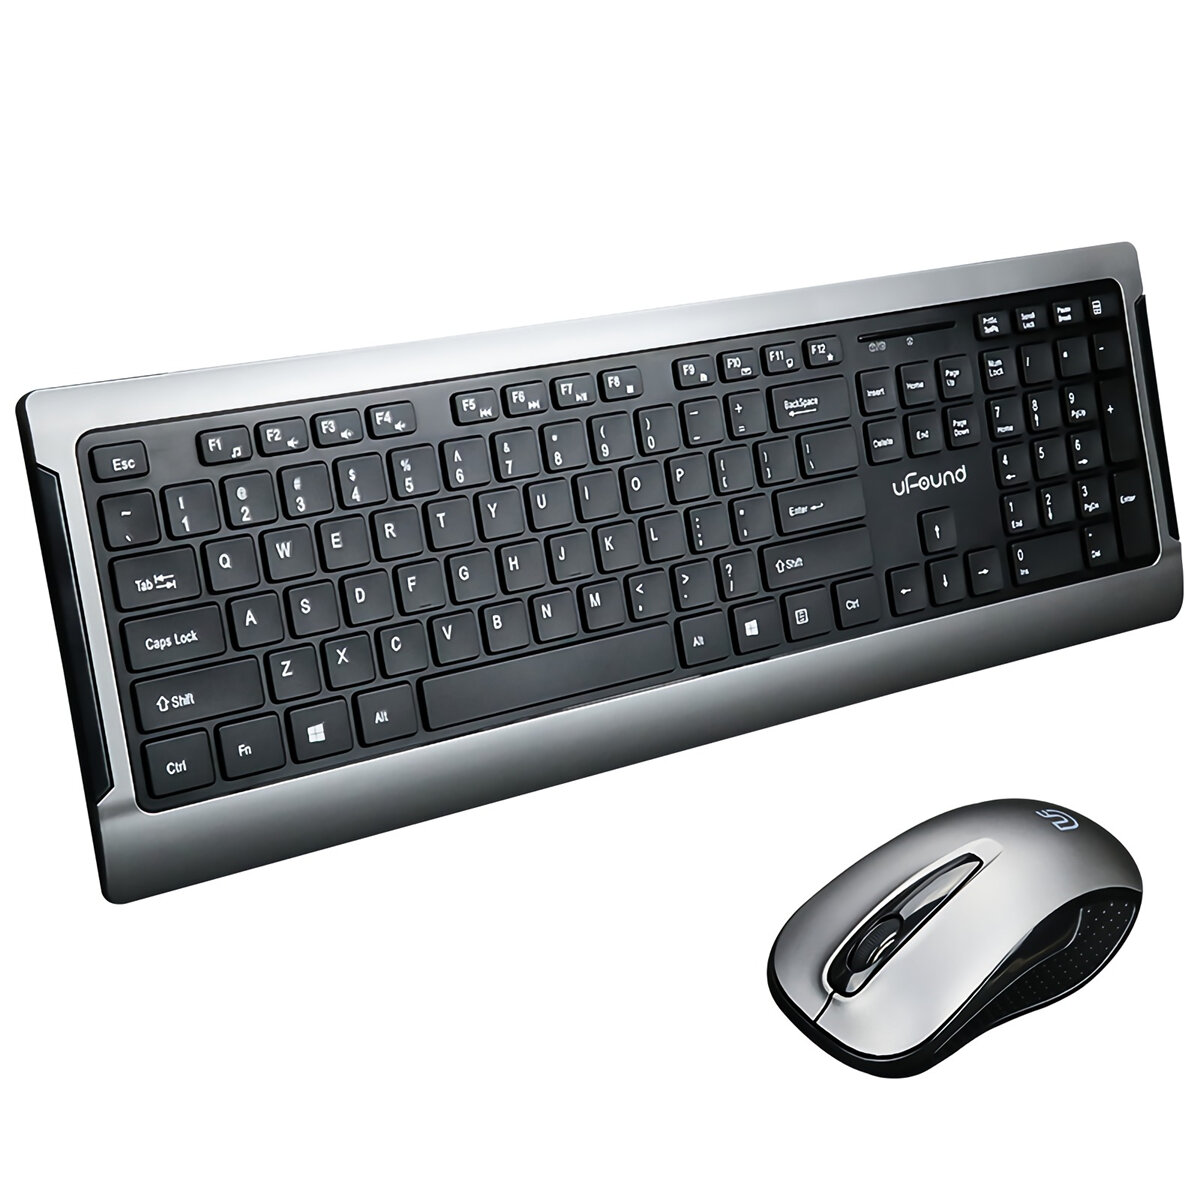 uFound R756 2.4G Draadloos toetsenbord en muis Set Metalen basis Kantoor Silent 106 toetsen Business